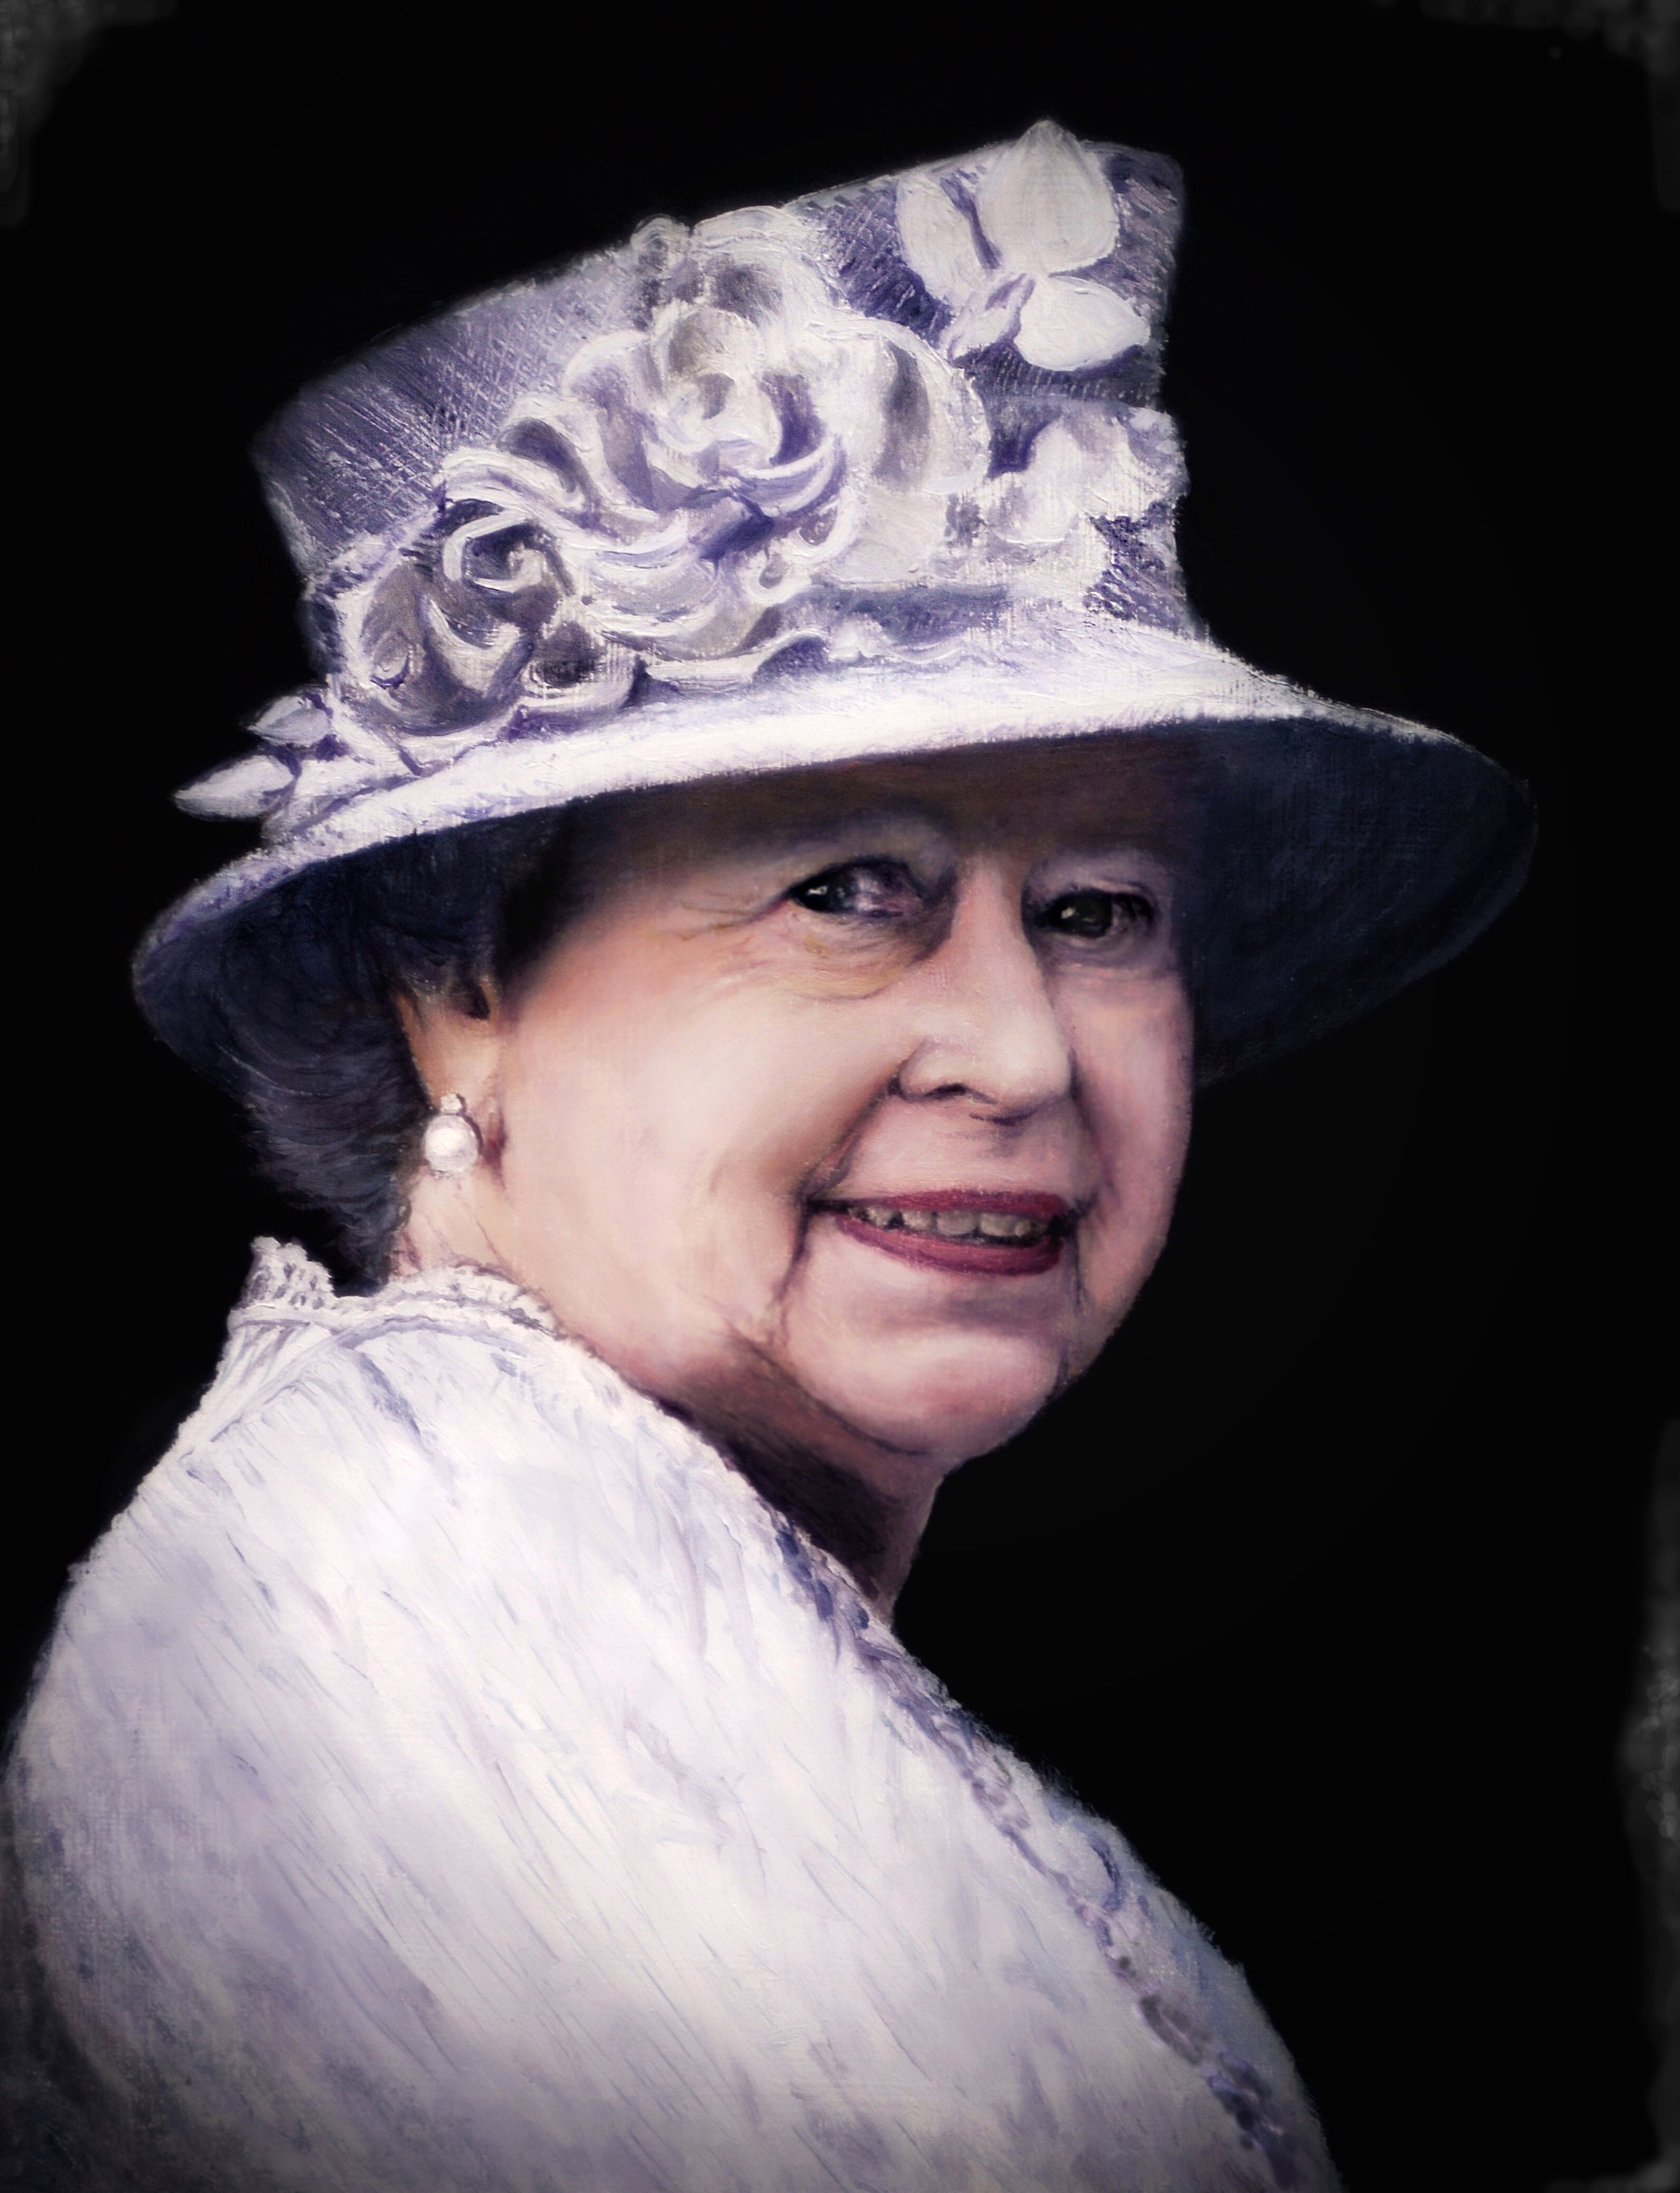 "Queen Elizabeth"